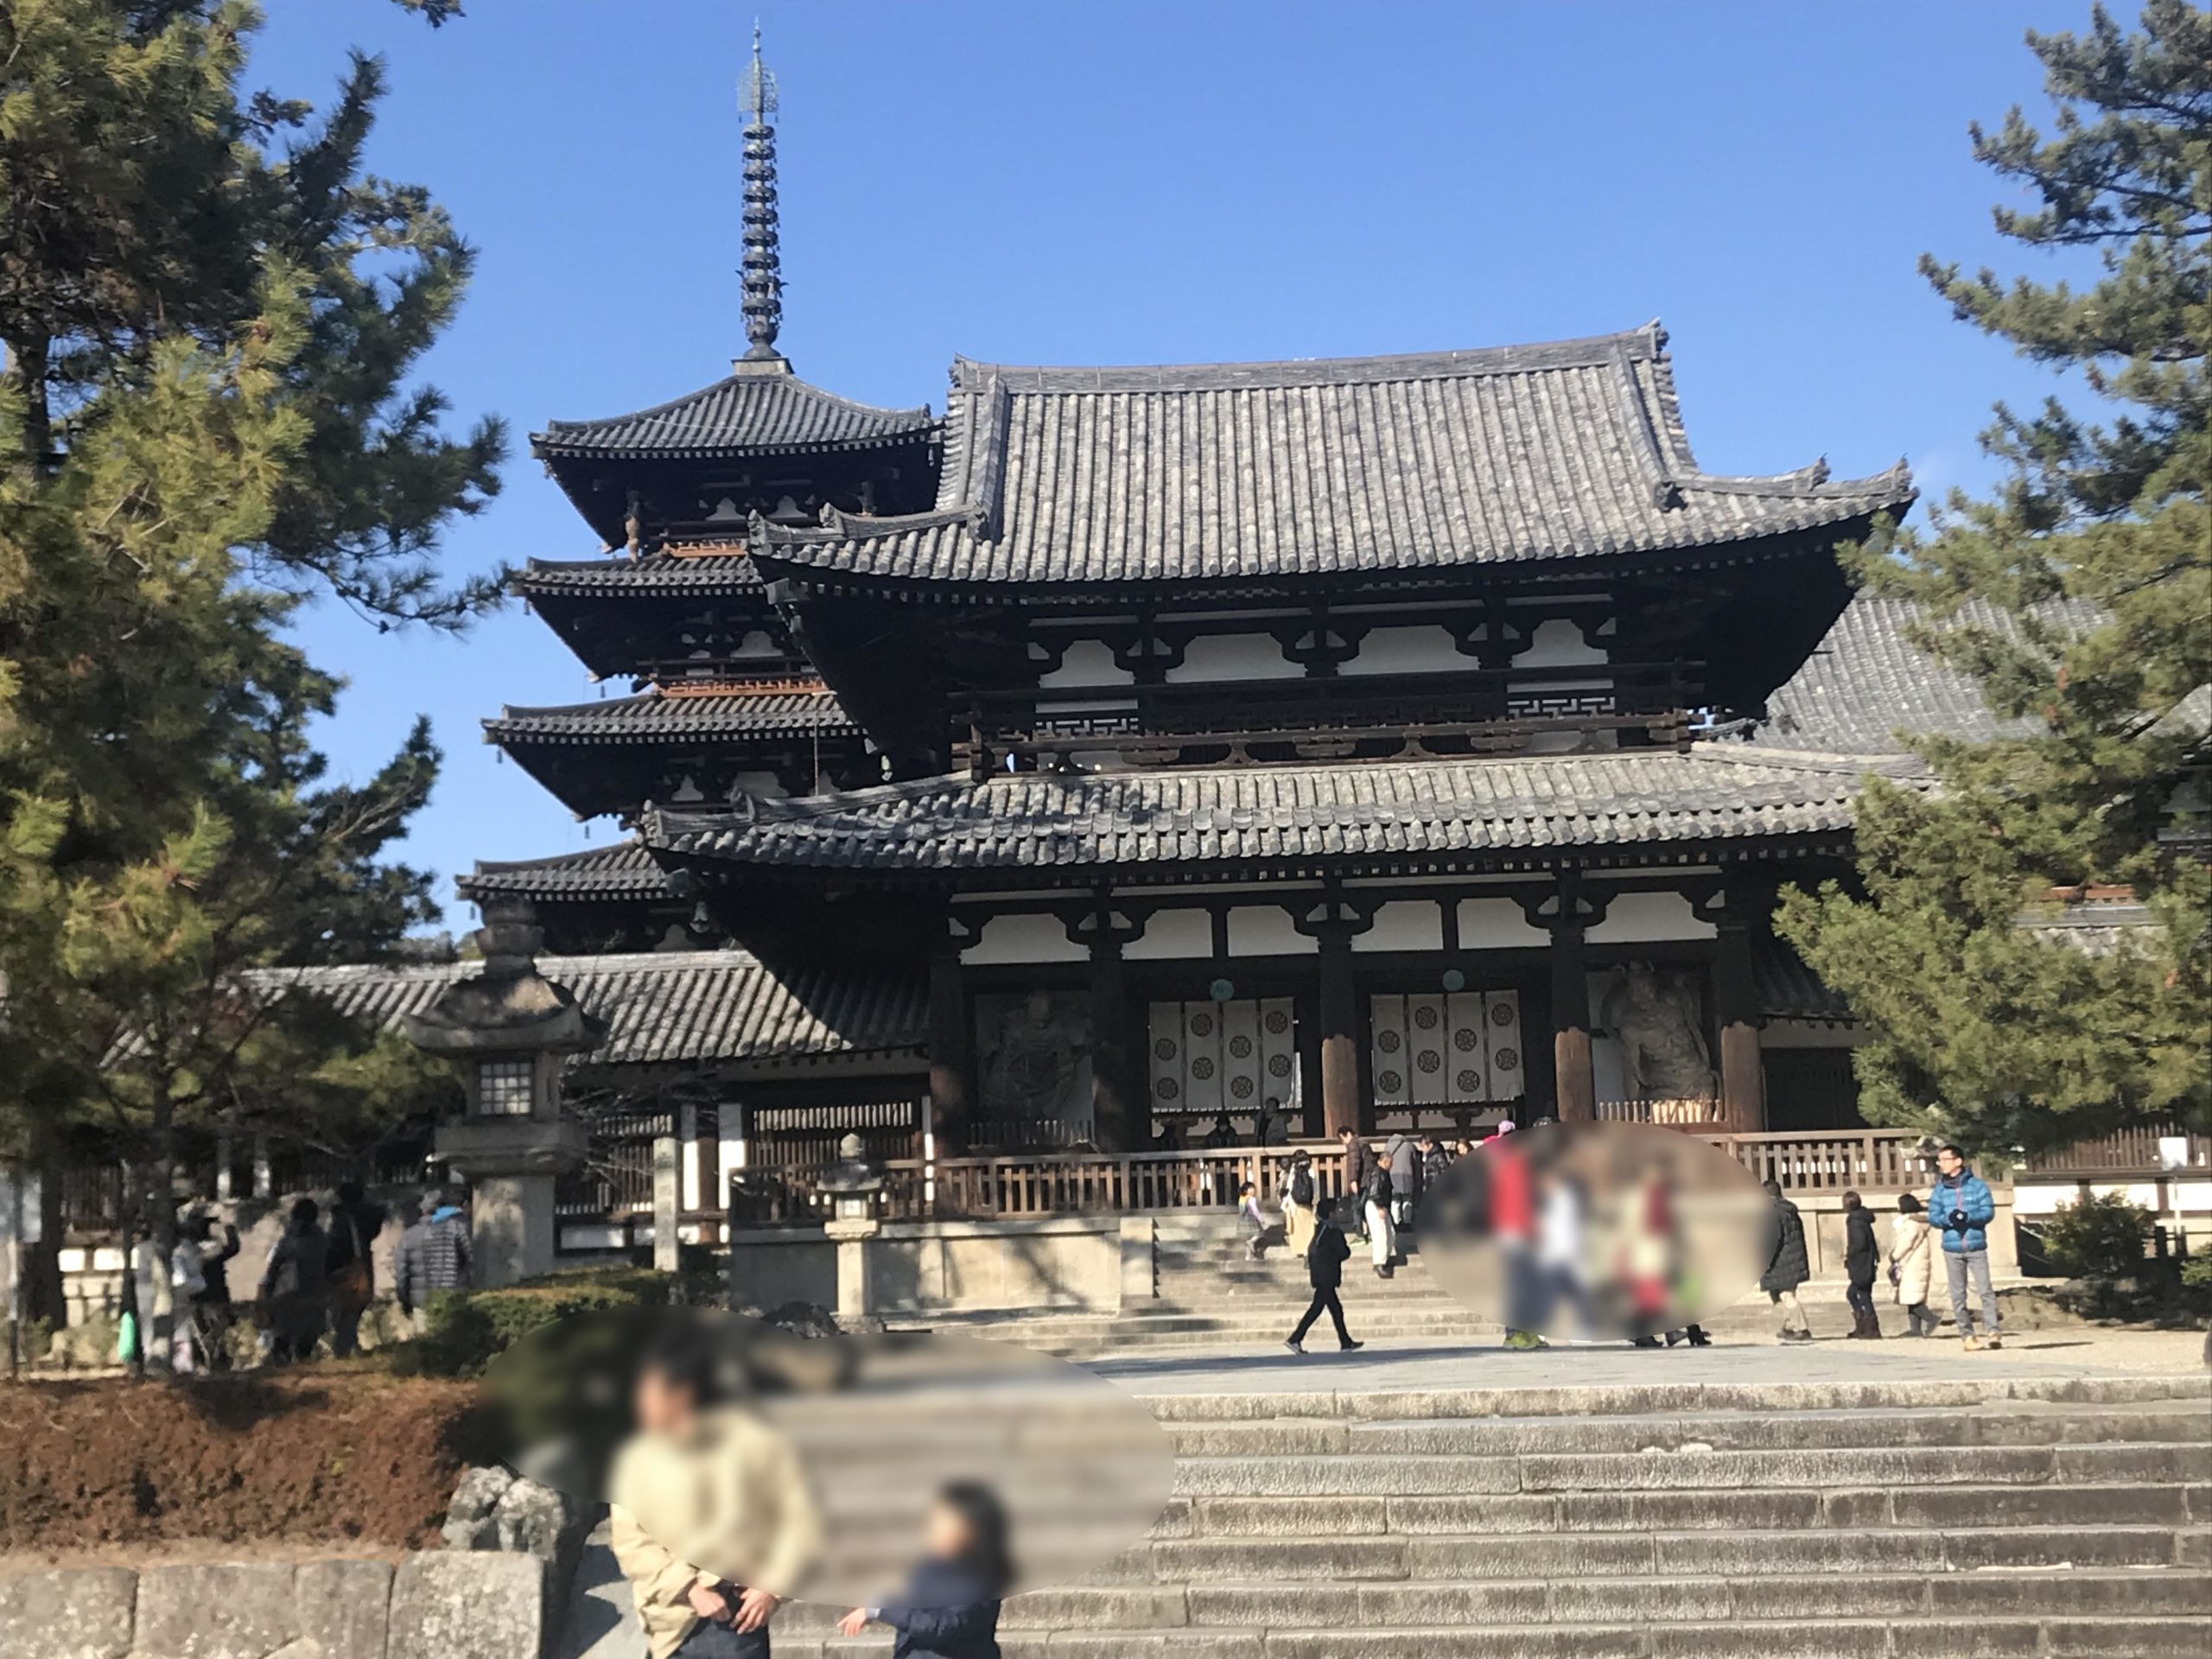 法隆寺は世界遺産に日本初で登録された奈良の観光スポット。奈良県人がご案内します！